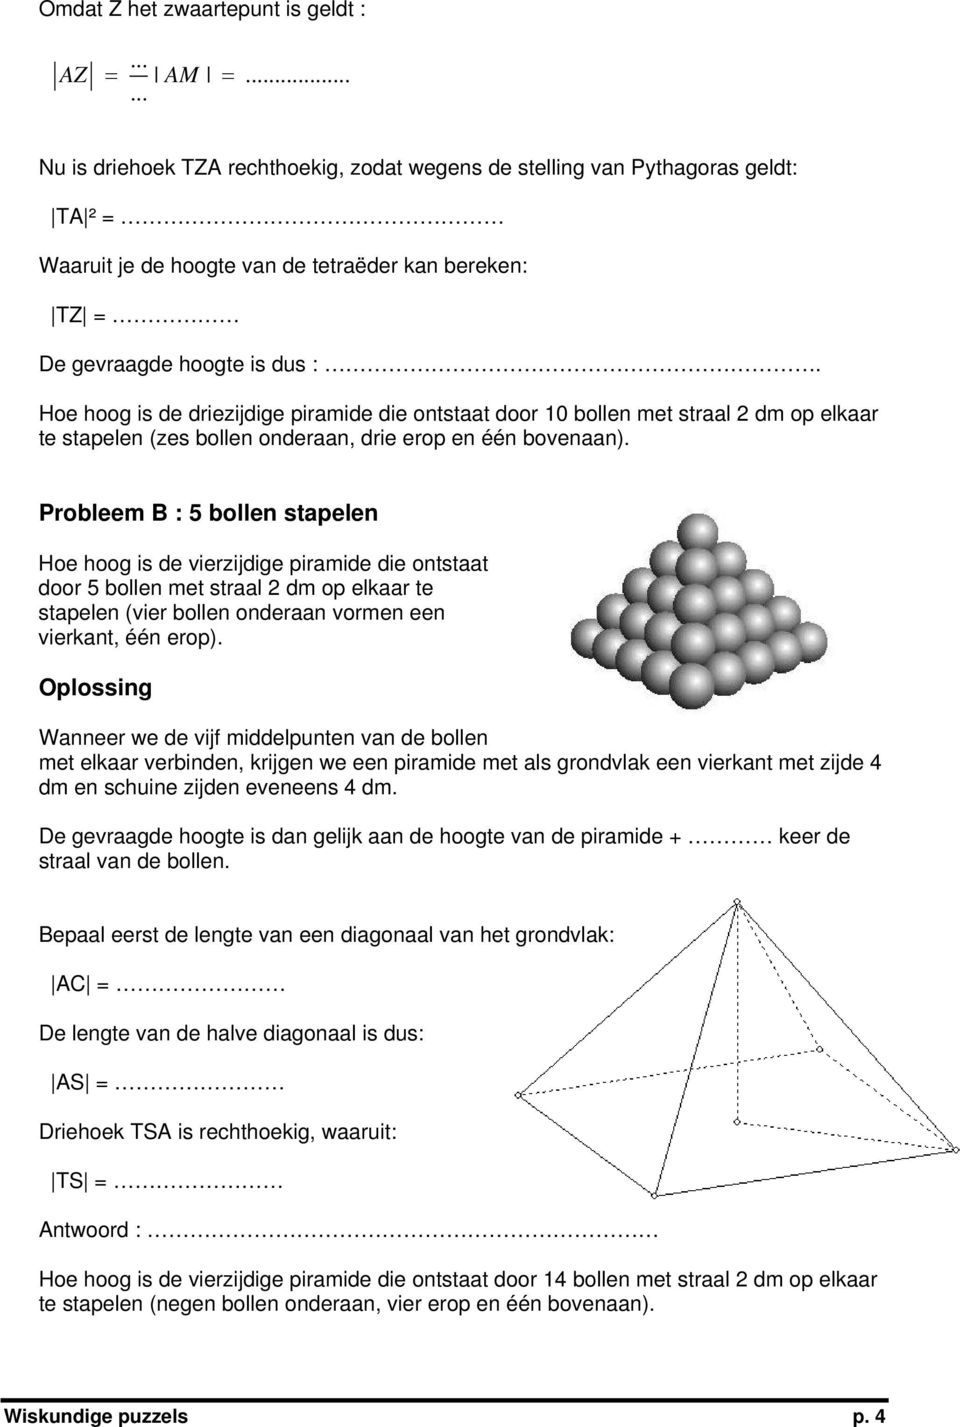 Hoe hoog is de driezijdige piramide die ontstaat door 10 bollen met straal 2 dm op elkaar te stapelen (zes bollen onderaan, drie erop en één bovenaan).